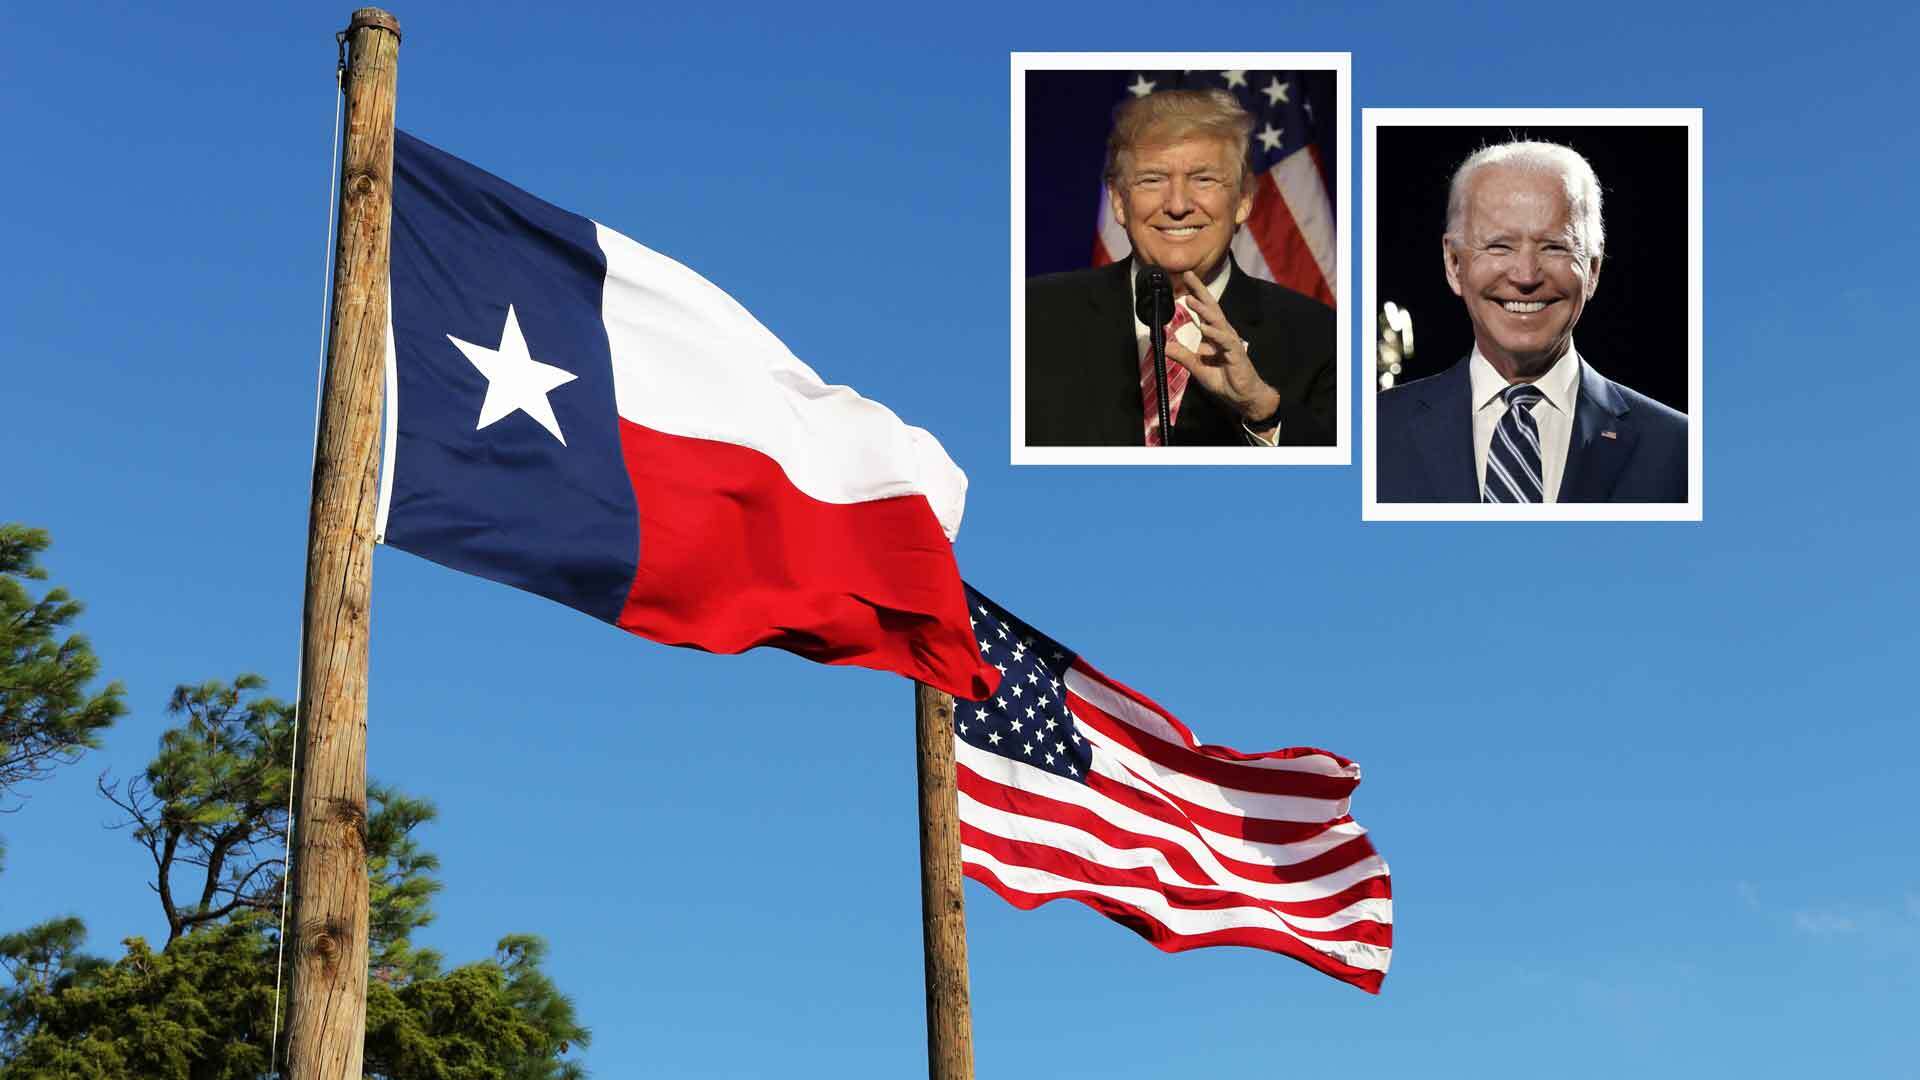 Decisión 2020: Texas y proceso electoral en Estados Unidos